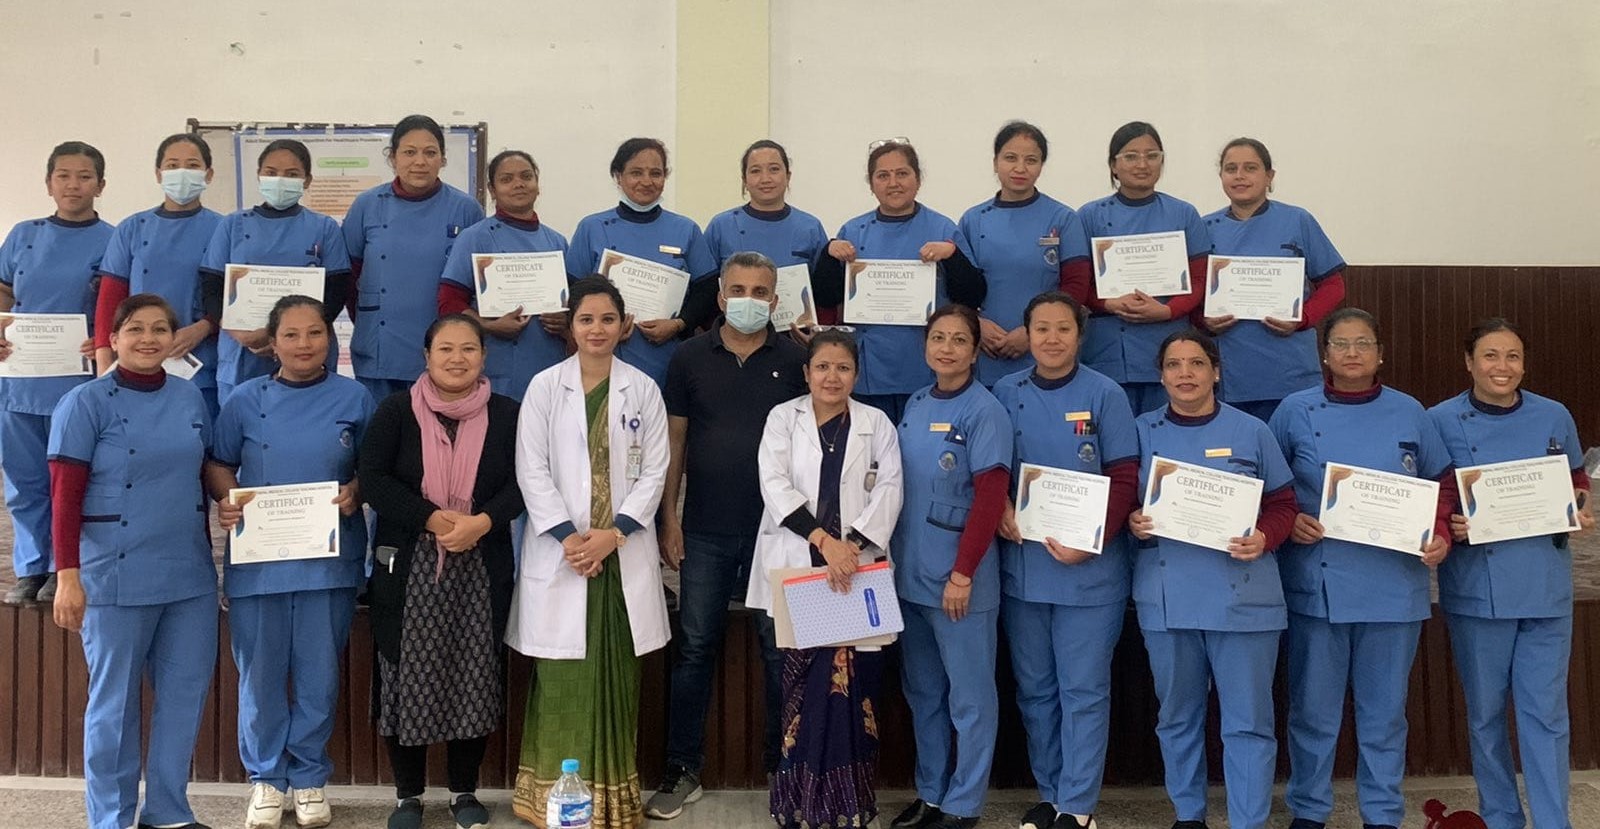 नेपाल मेडिकल कलेजका स्टाफ नर्सहरुलाई लाइफ सपोर्ट तालिम